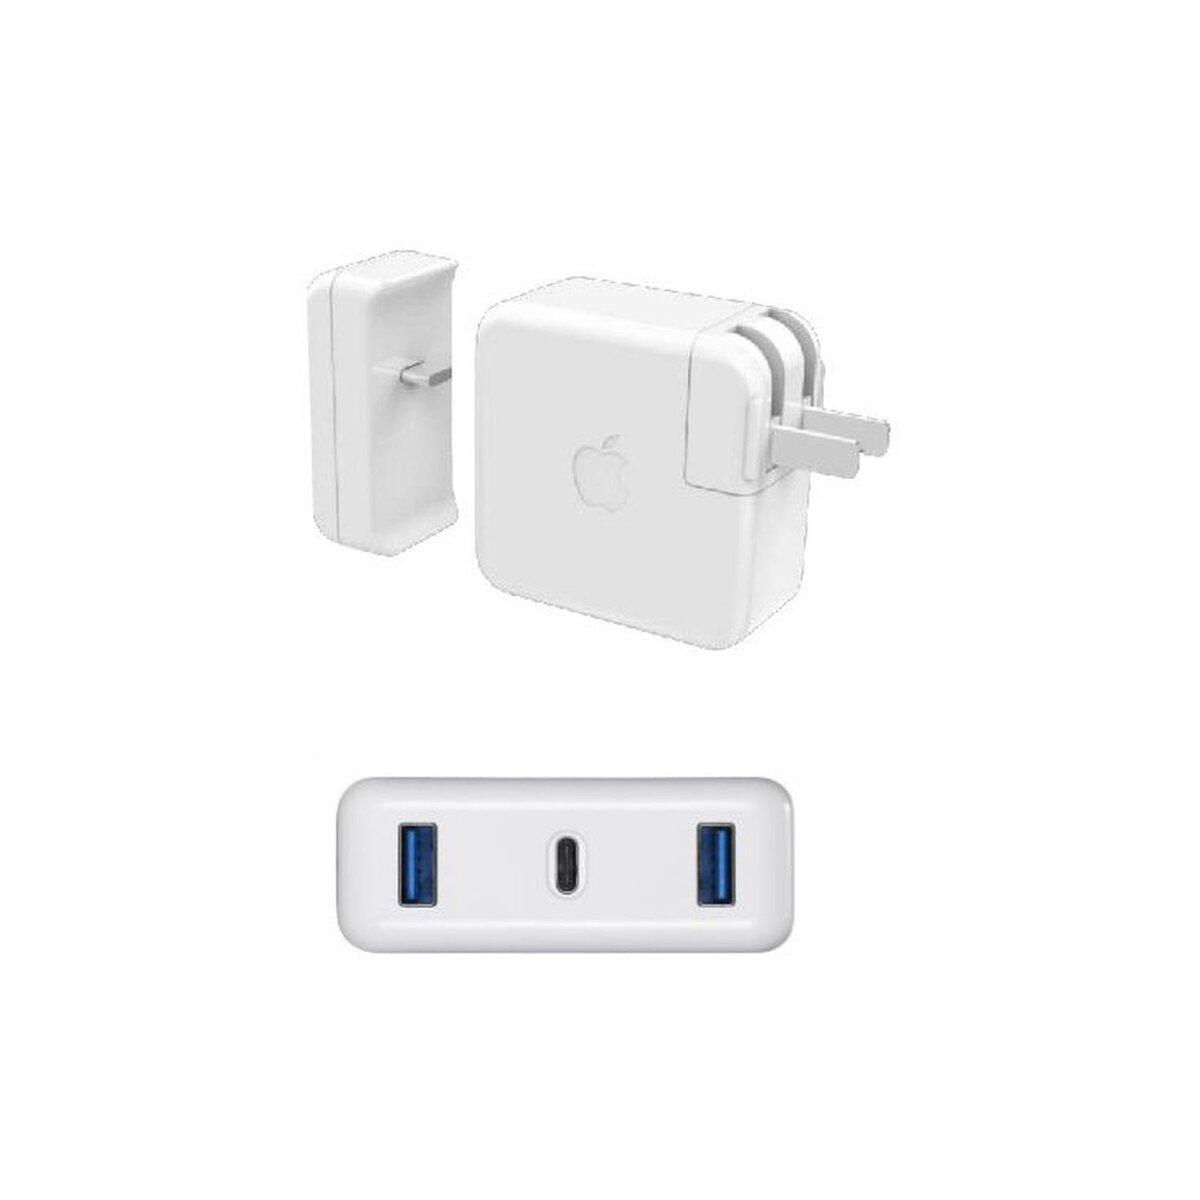 XTREMEMAC Adaptateur - Pour chargeur MacBook Pro - 1 x USB Type-C + 2 x USB - Mâle/Femelle - Blanc